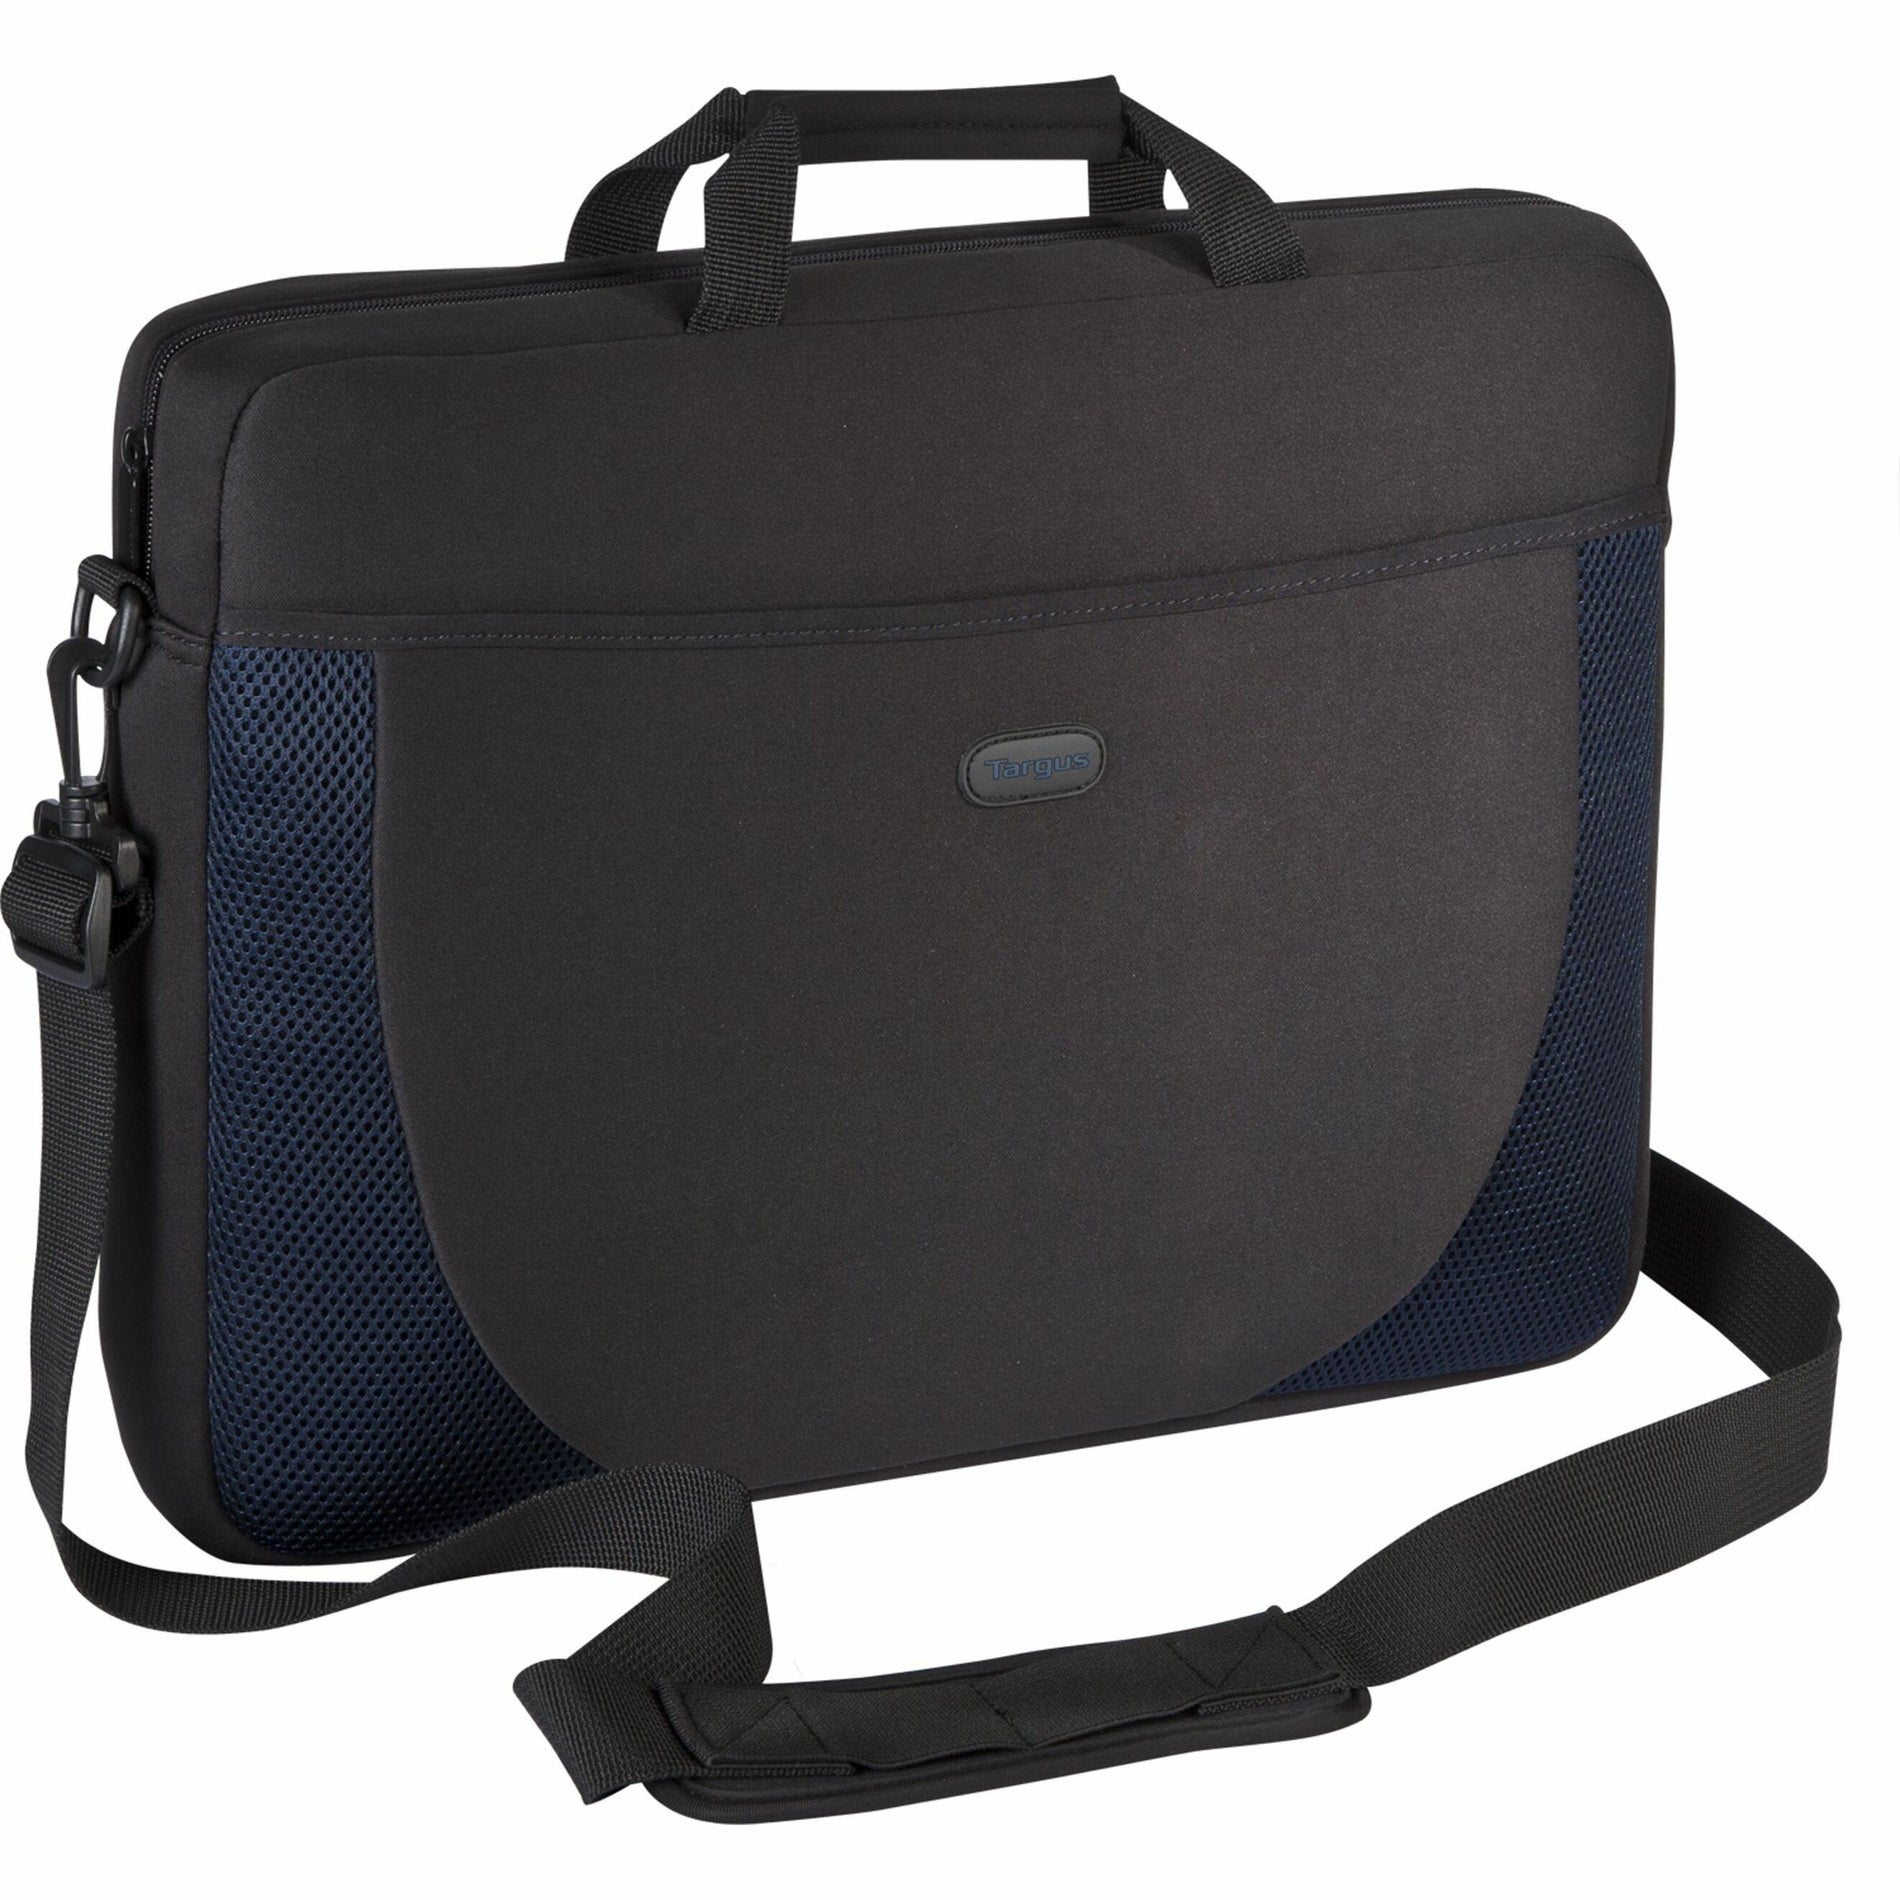 Targus CVR217 17" Slipcase, Black/Blue Notebook Case